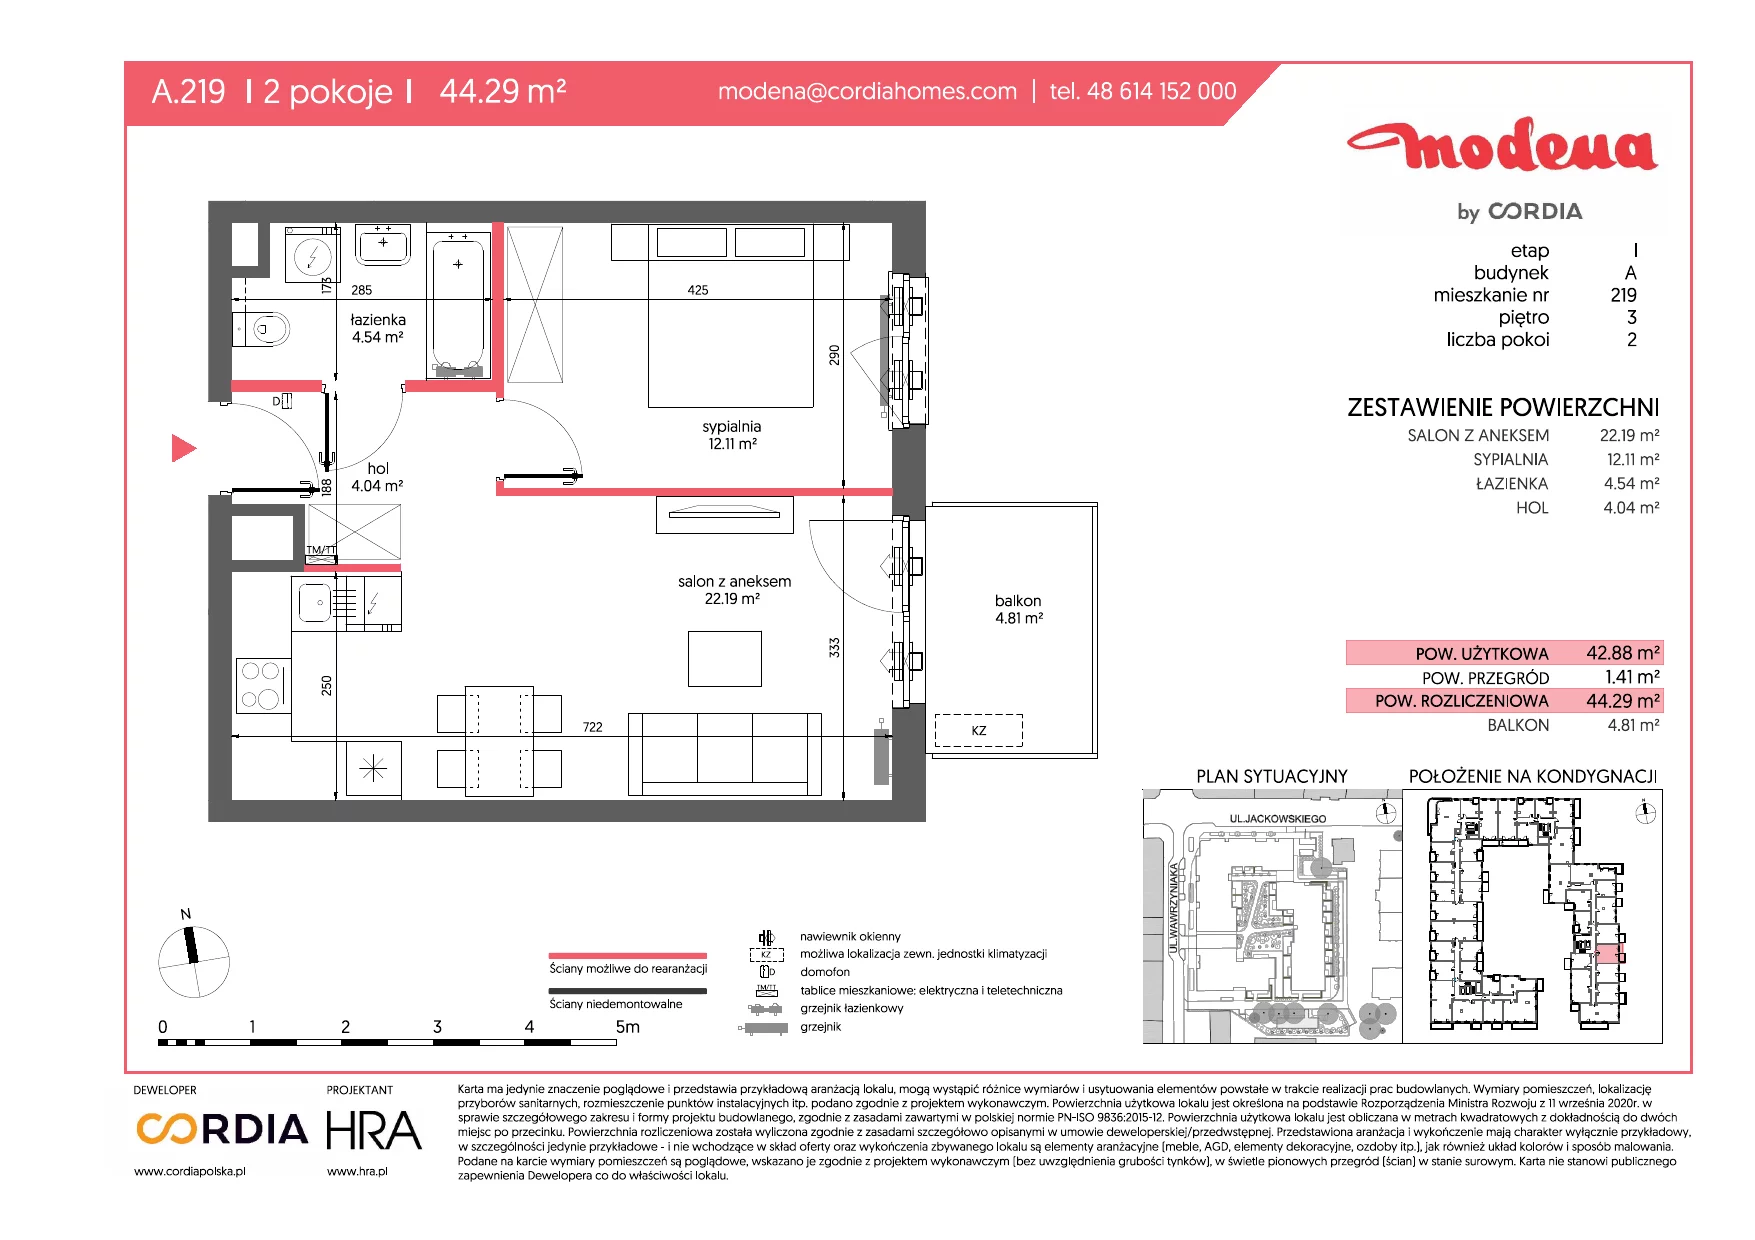 Mieszkanie 44,29 m², piętro 3, oferta nr A.219, Modena, Poznań, Jeżyce, Jeżyce, ul. Jackowskiego 24